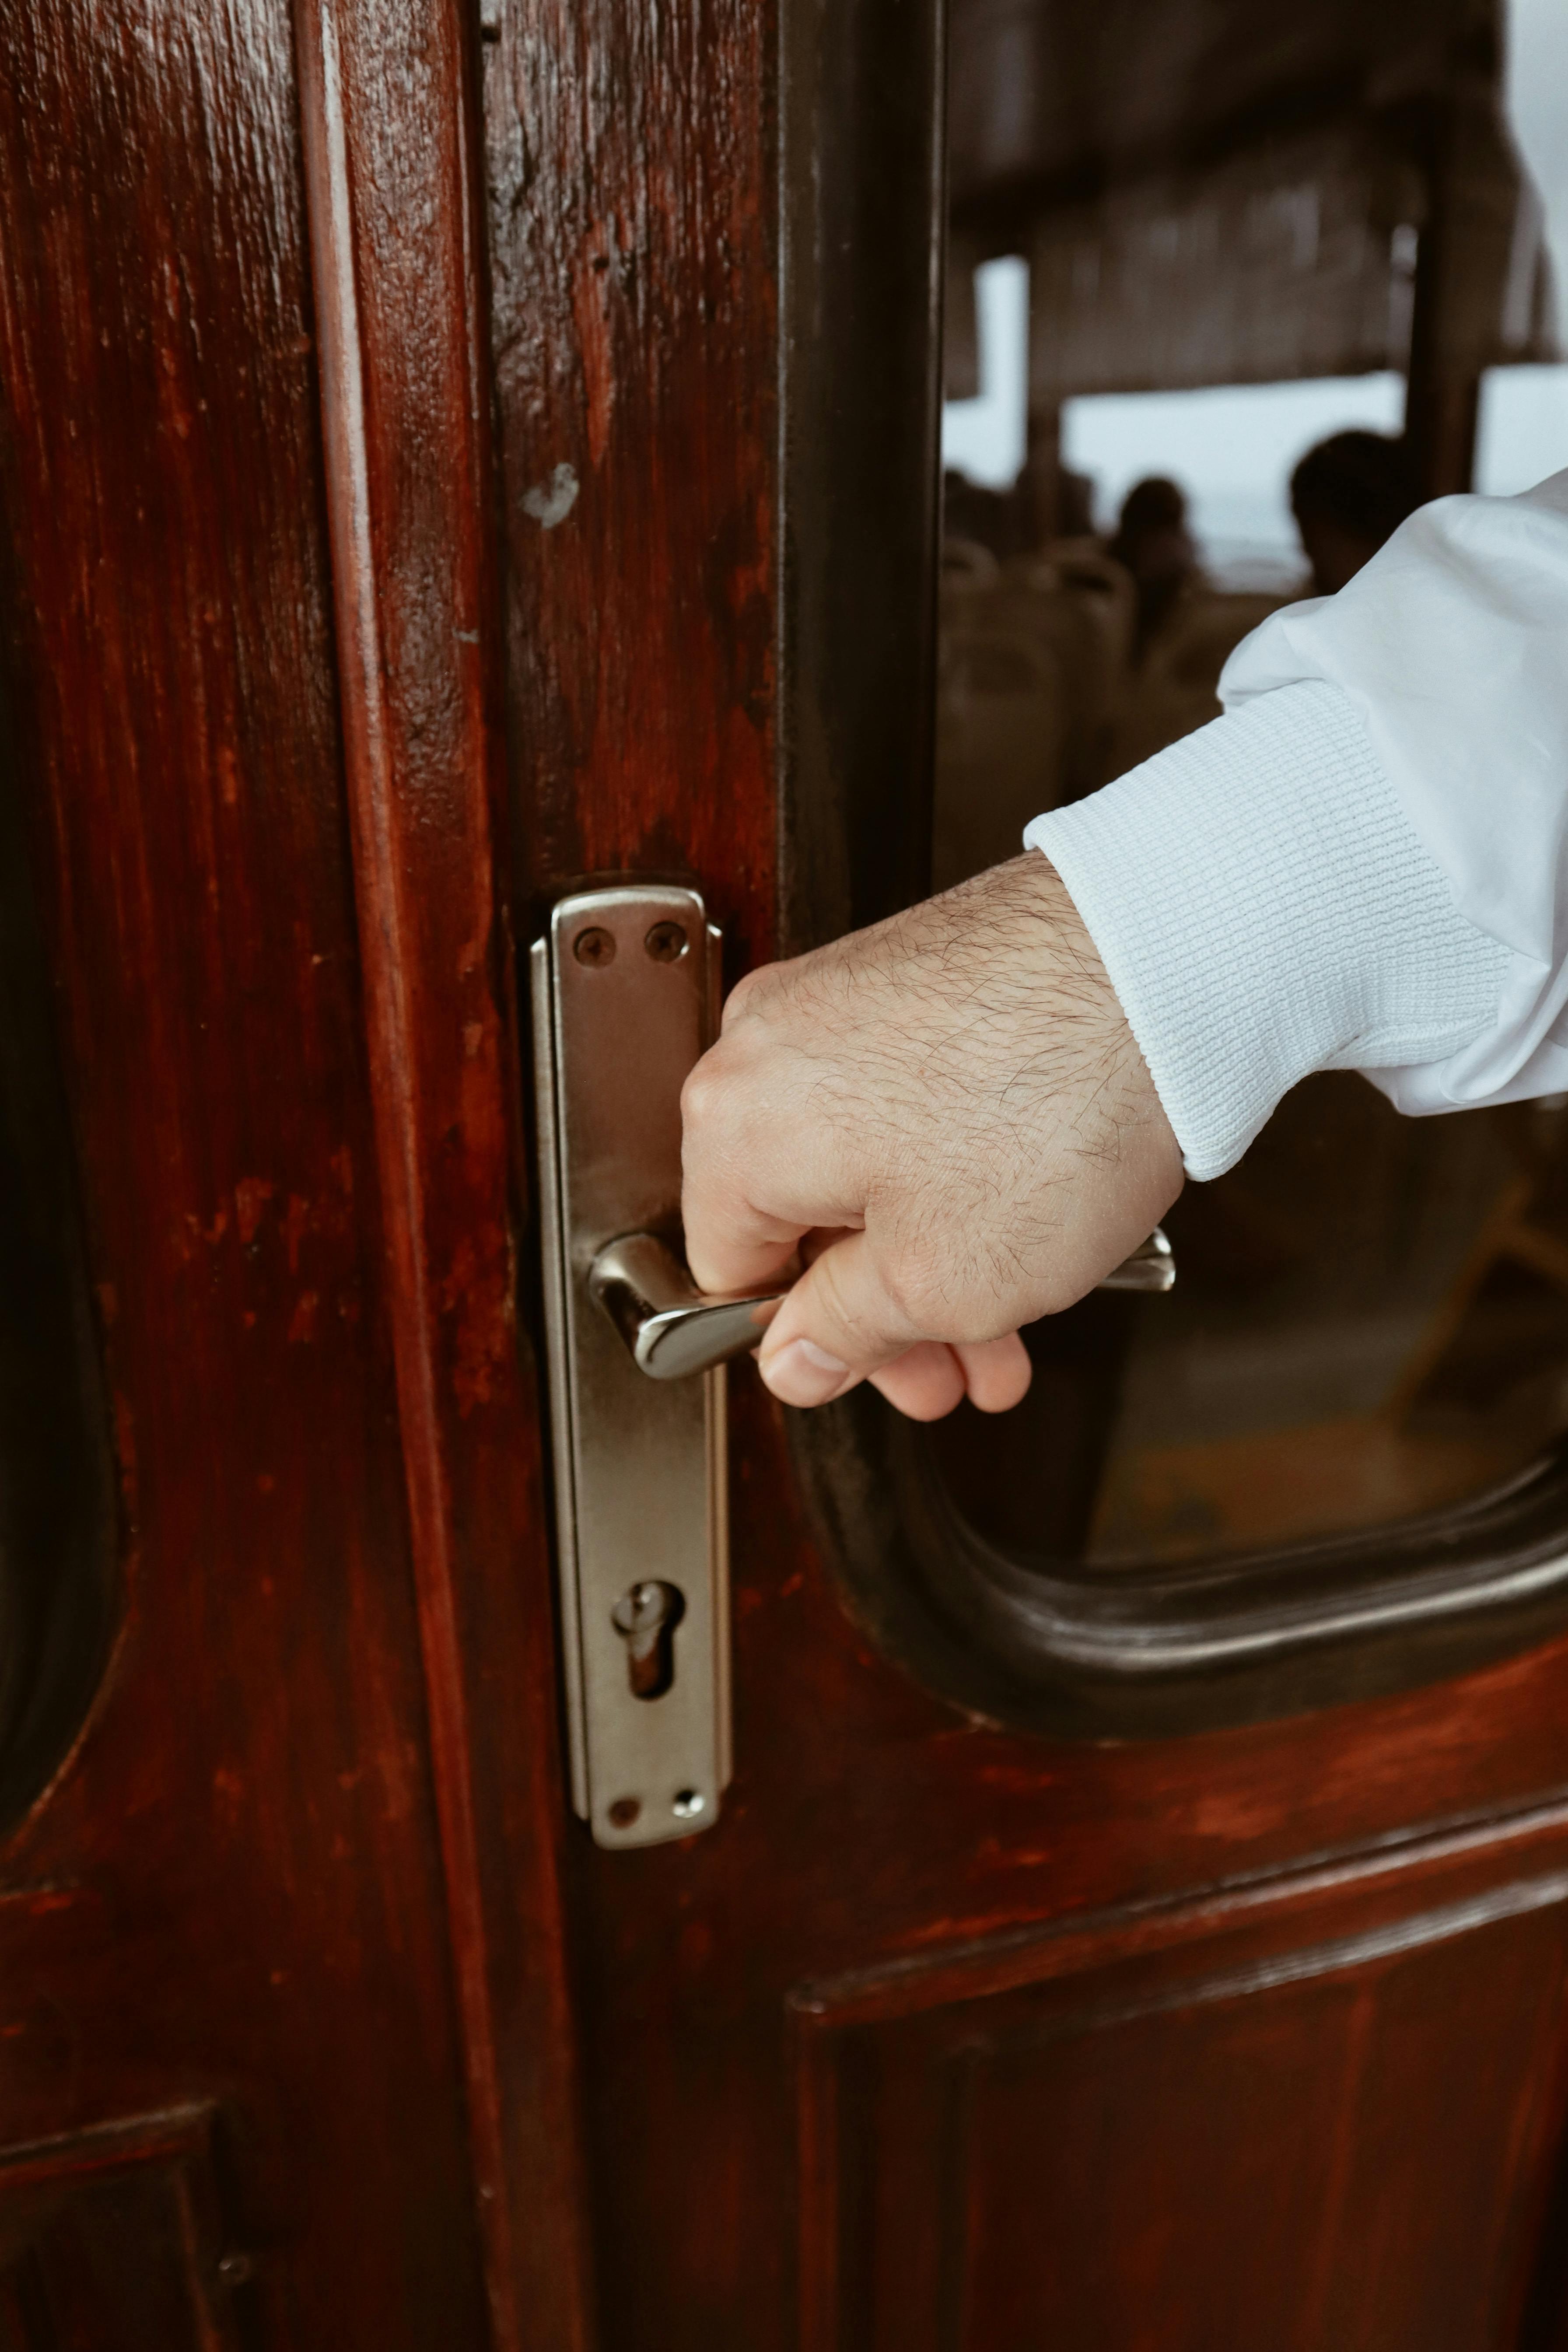 A person grabbing a door handle | Source: Pexels